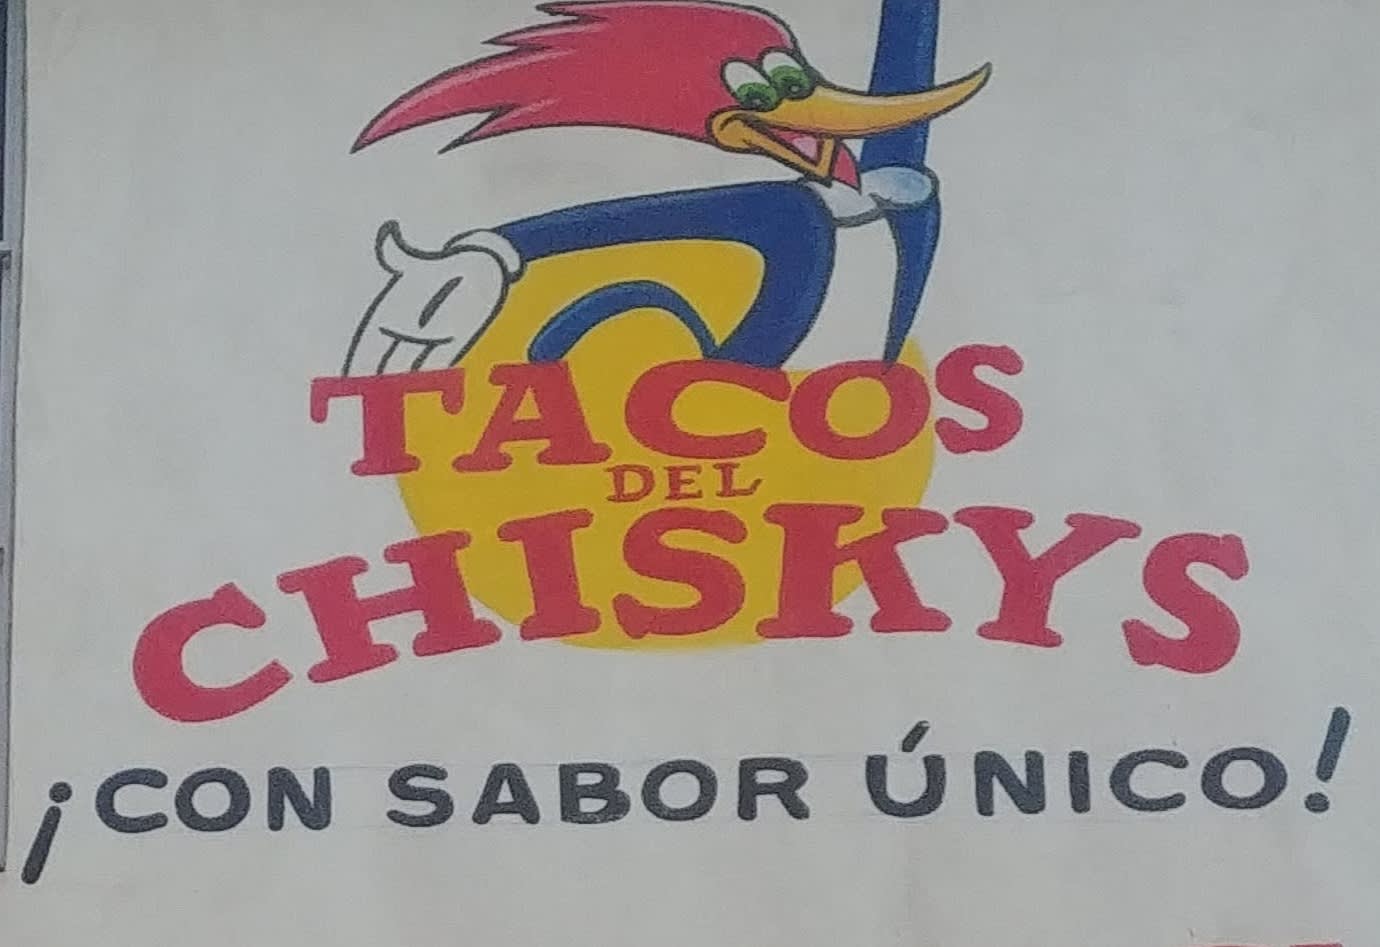 Tacos del Chiskys